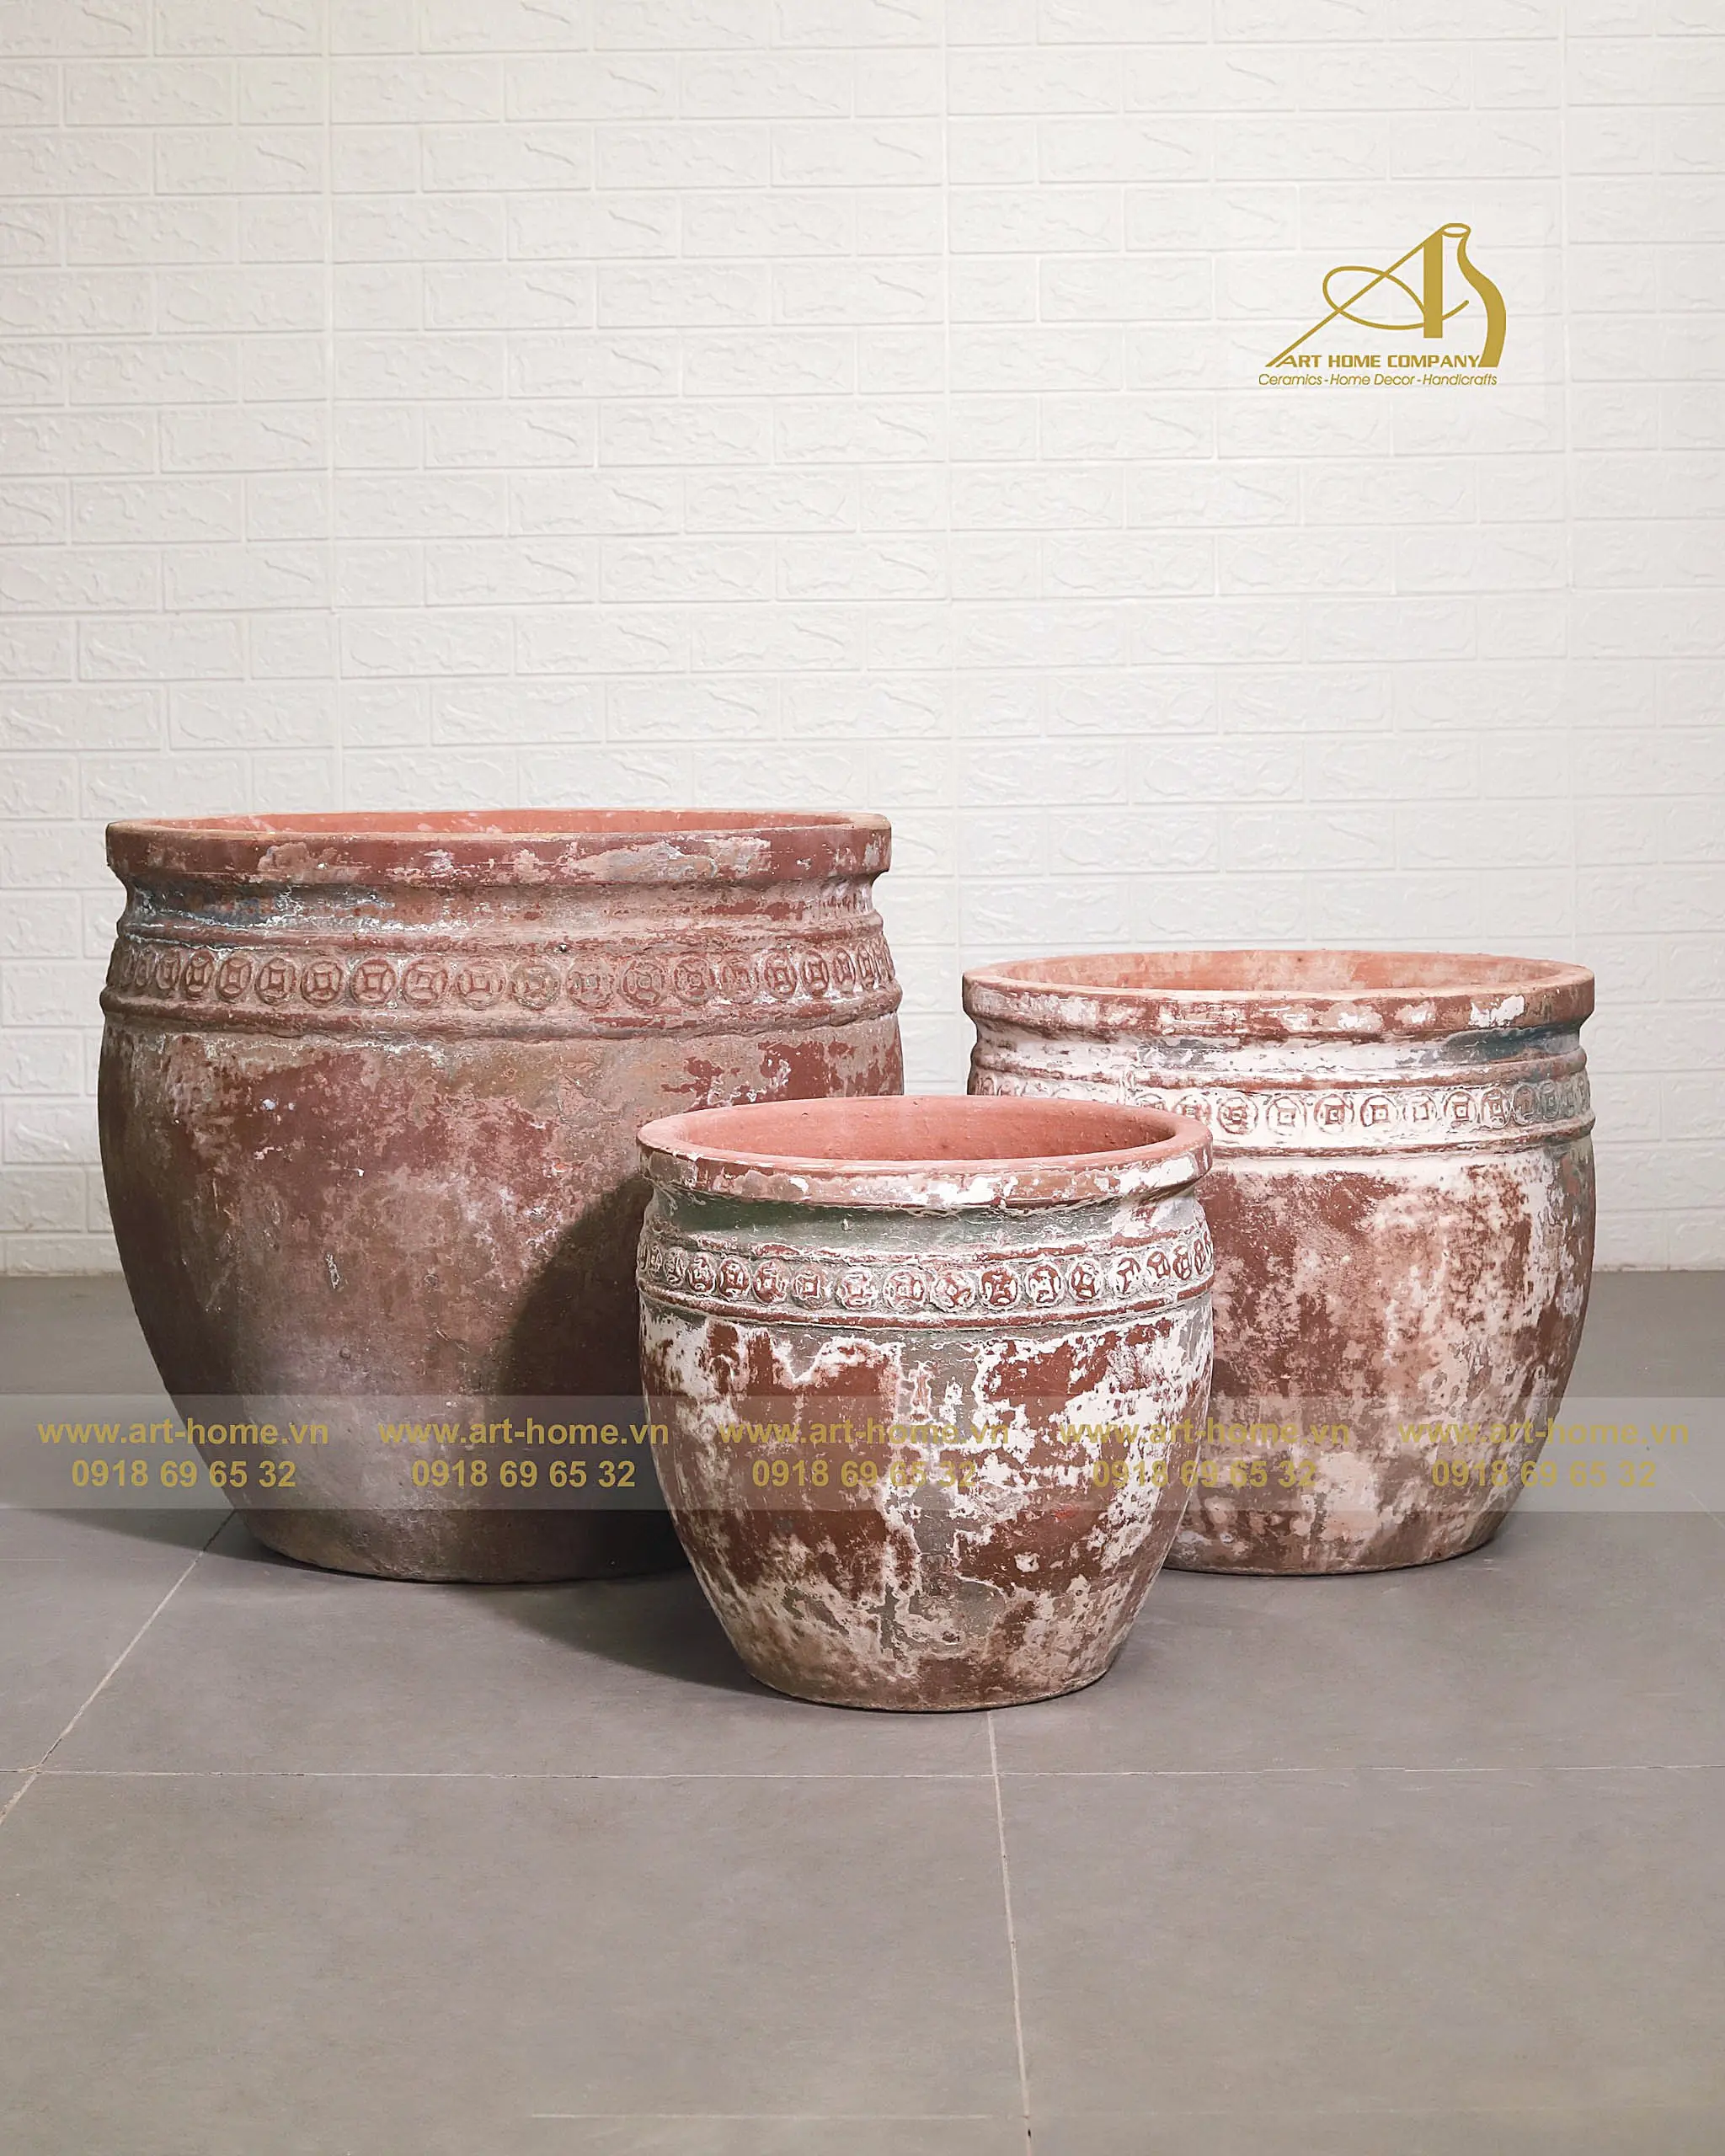 Vaso di ceramica Atlantis AN714H41 marrone ruggine adatto per piantare la decorazione del giardino e creare Mini paesaggi.